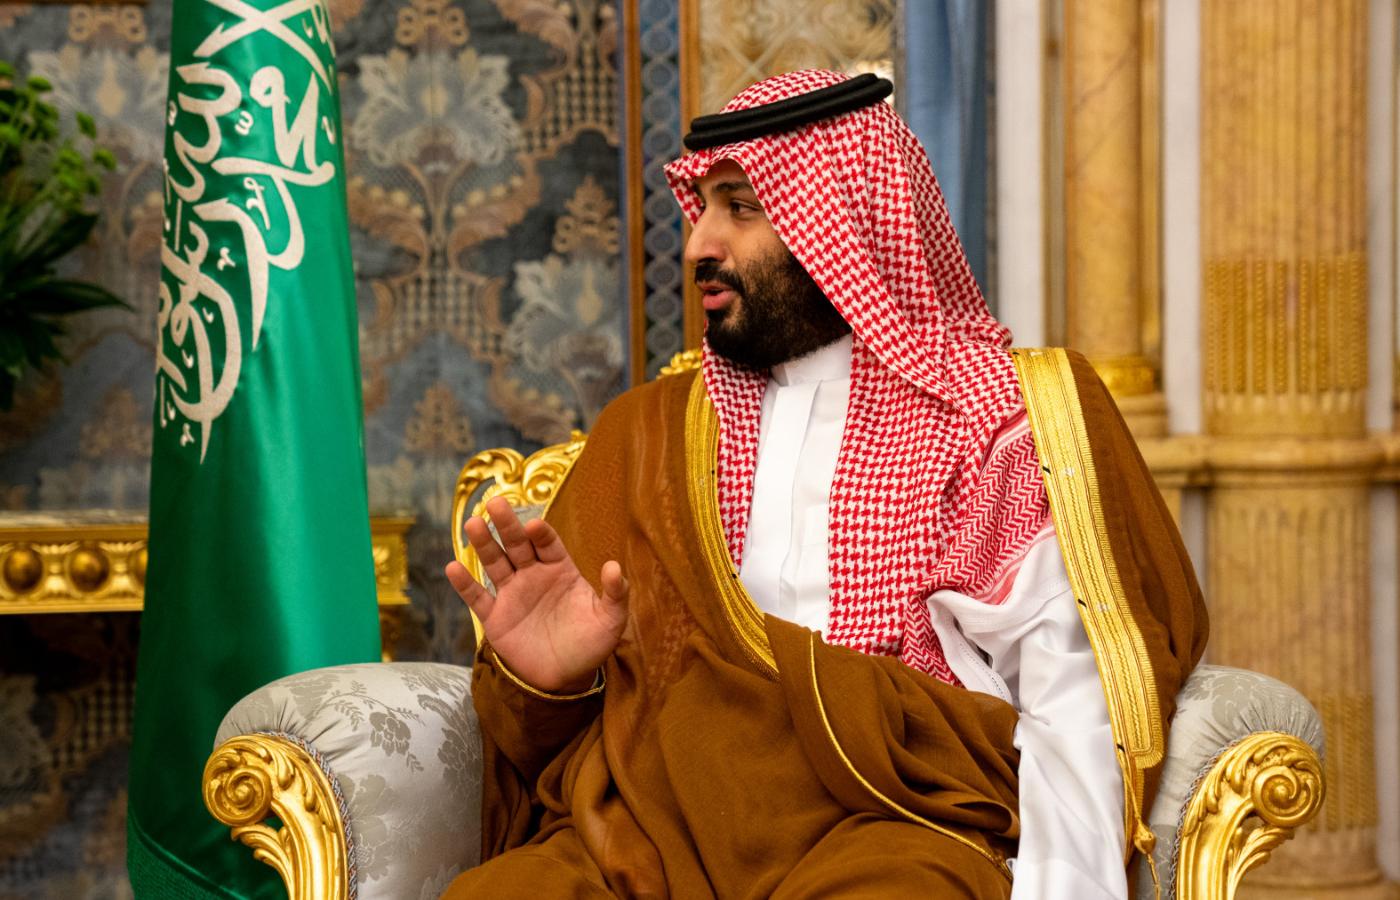 Książę Mohammed bin Salman (MBS) osobiście zaaprobował plan zabójstwa saudyjskiego dziennikarza i dysydenta Dżamala Chaszodżdżiego.